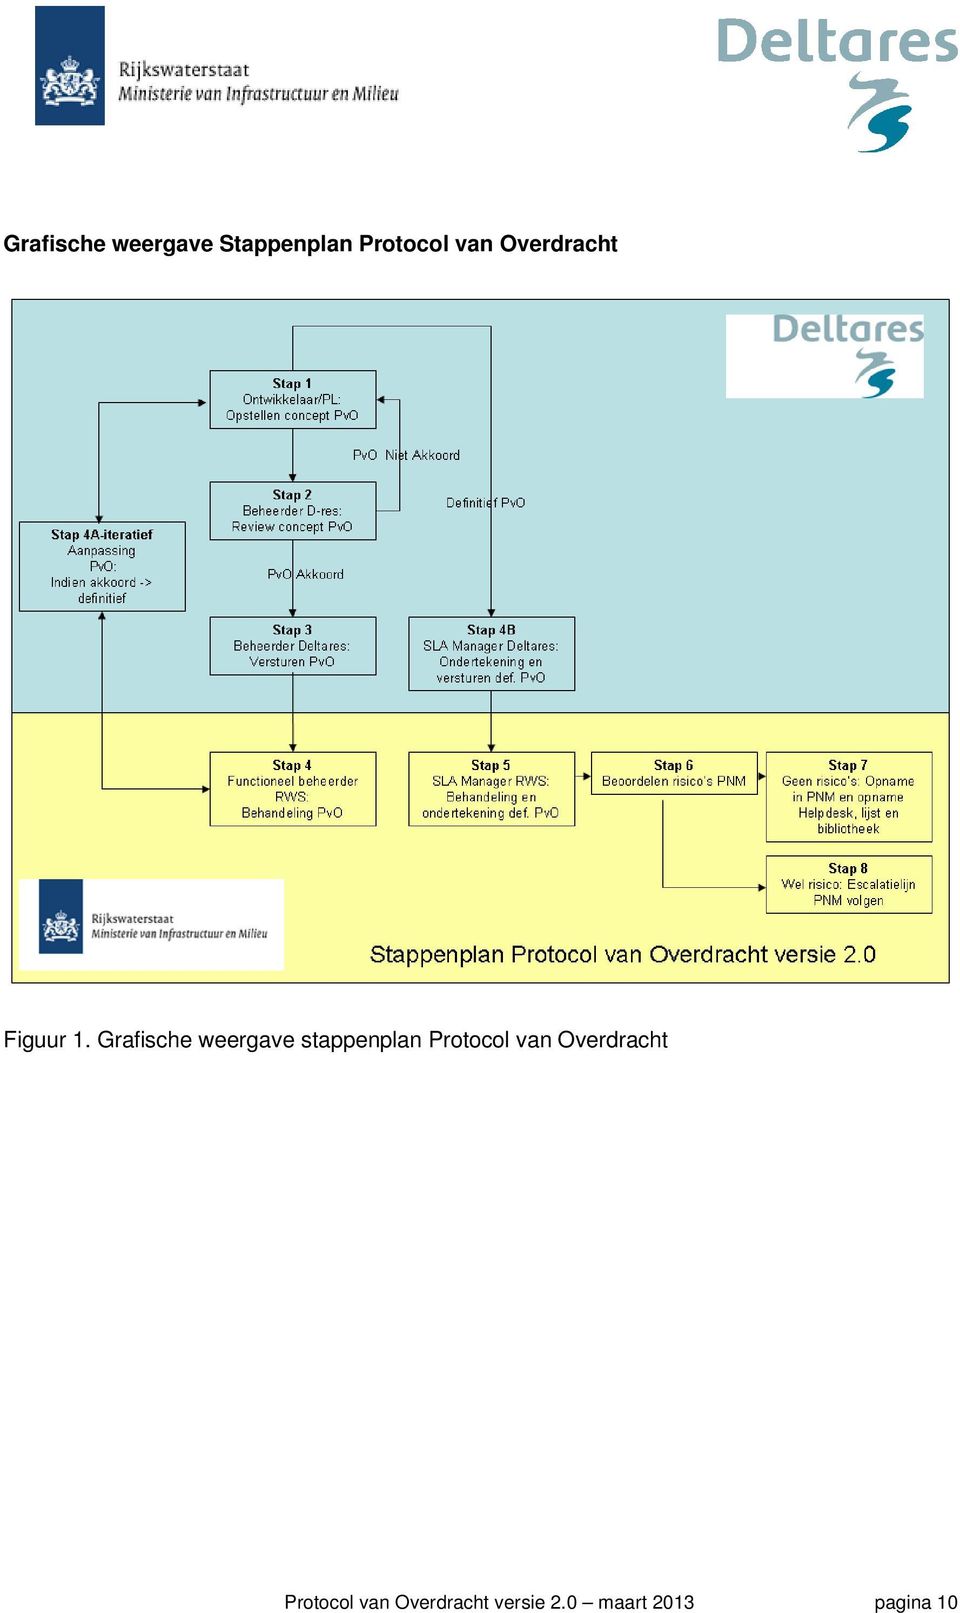 Grafische weergave stappenplan Protocol van